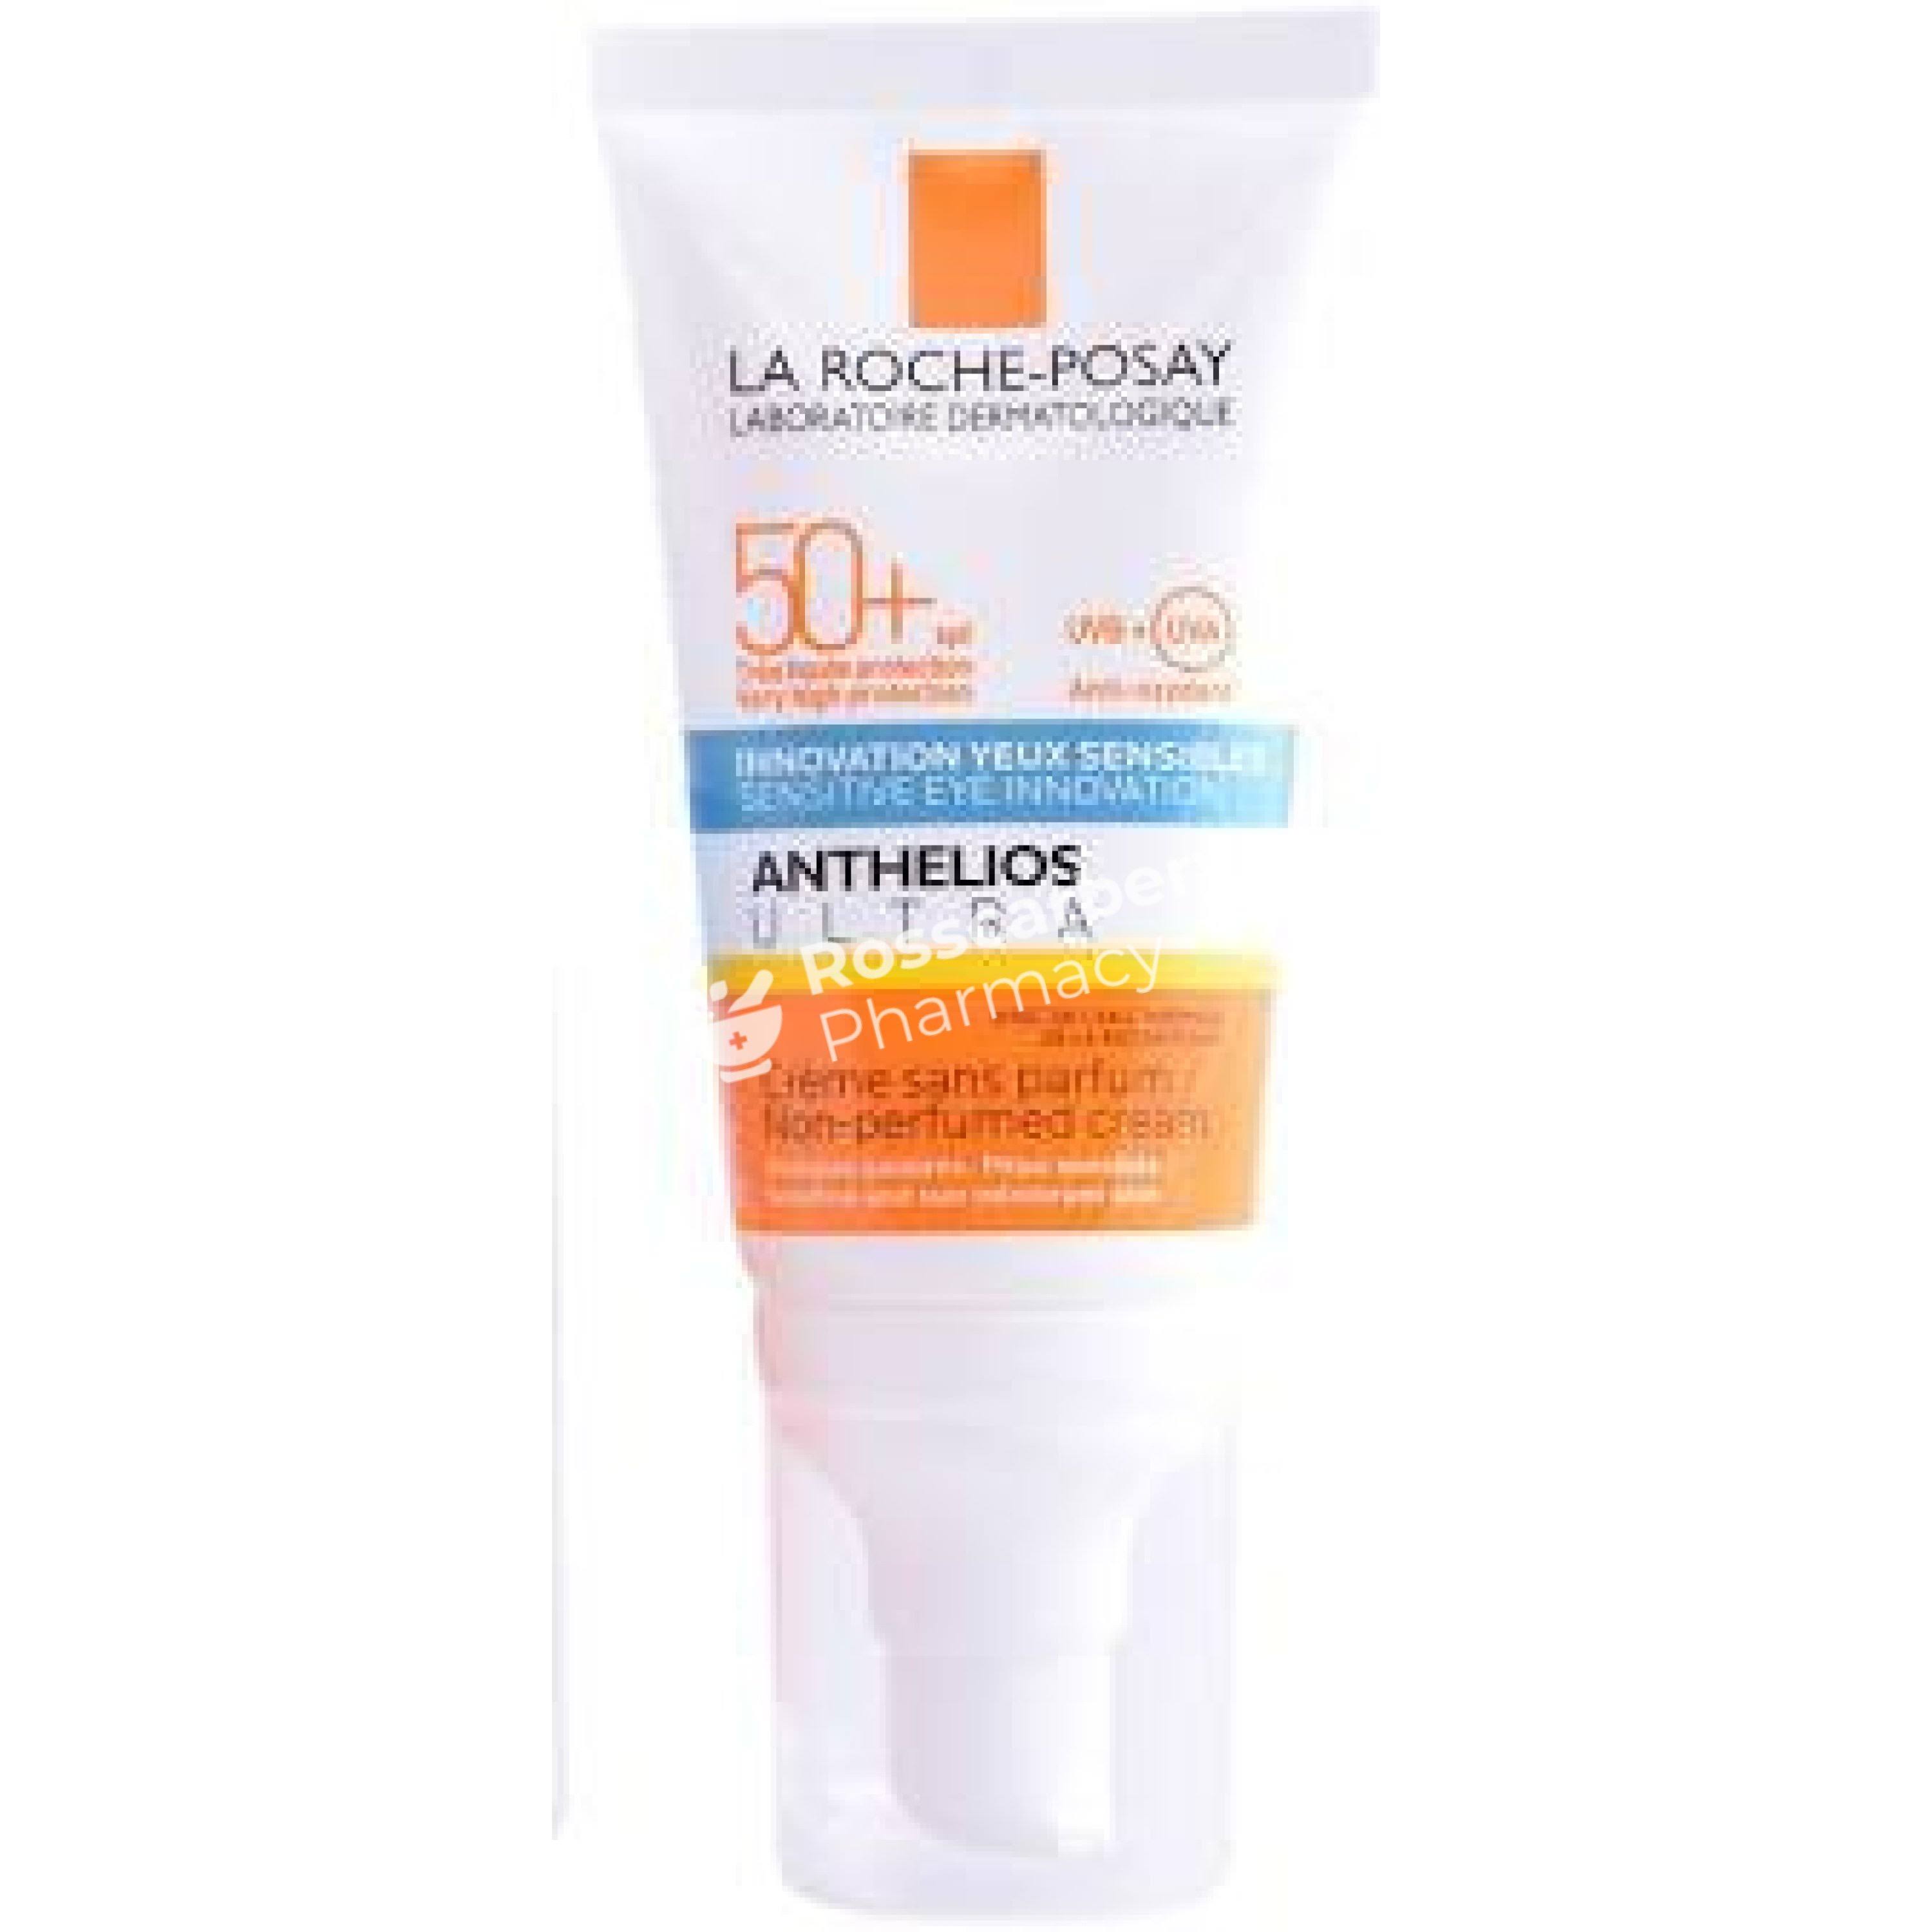 La Roche Posay Anthelios Ultra Comfort Cream - SPF50+, 50ml